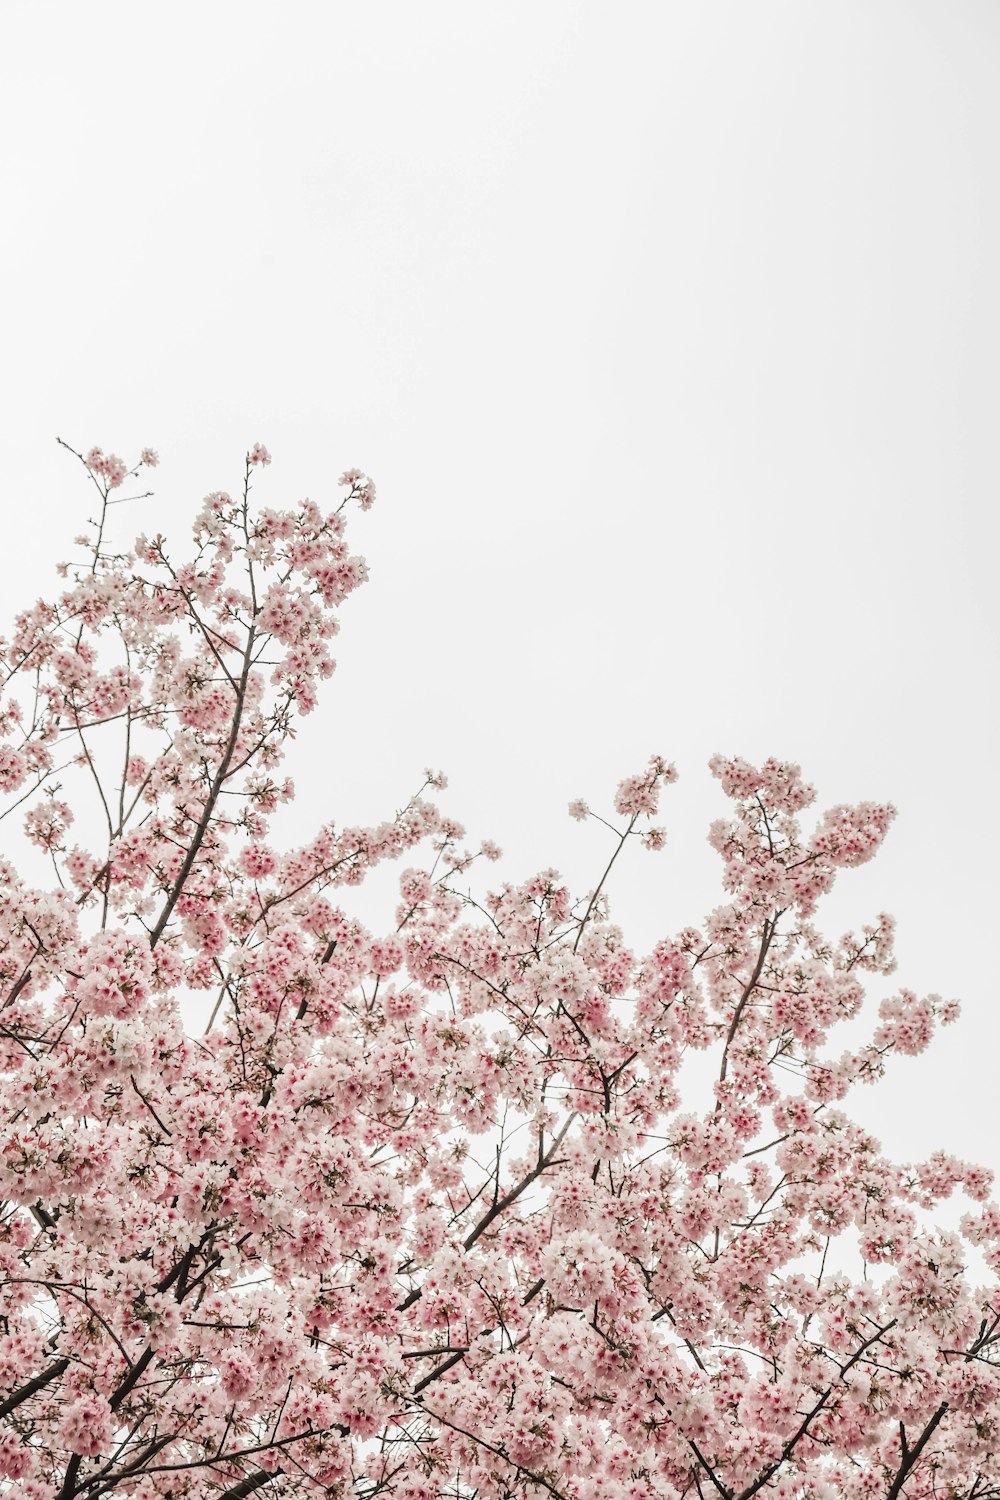 웜의 눈 뷰 사진 핑크 쾌활한 꽃 나무